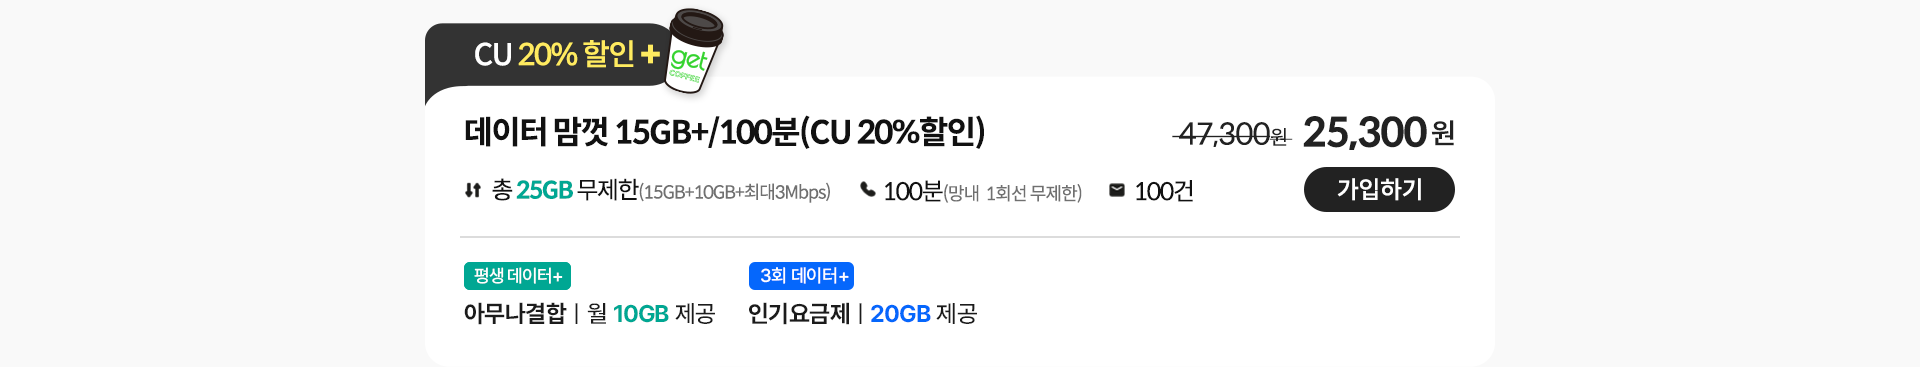 데이터 맘껏 15GB+/100분(CU 20%할인)